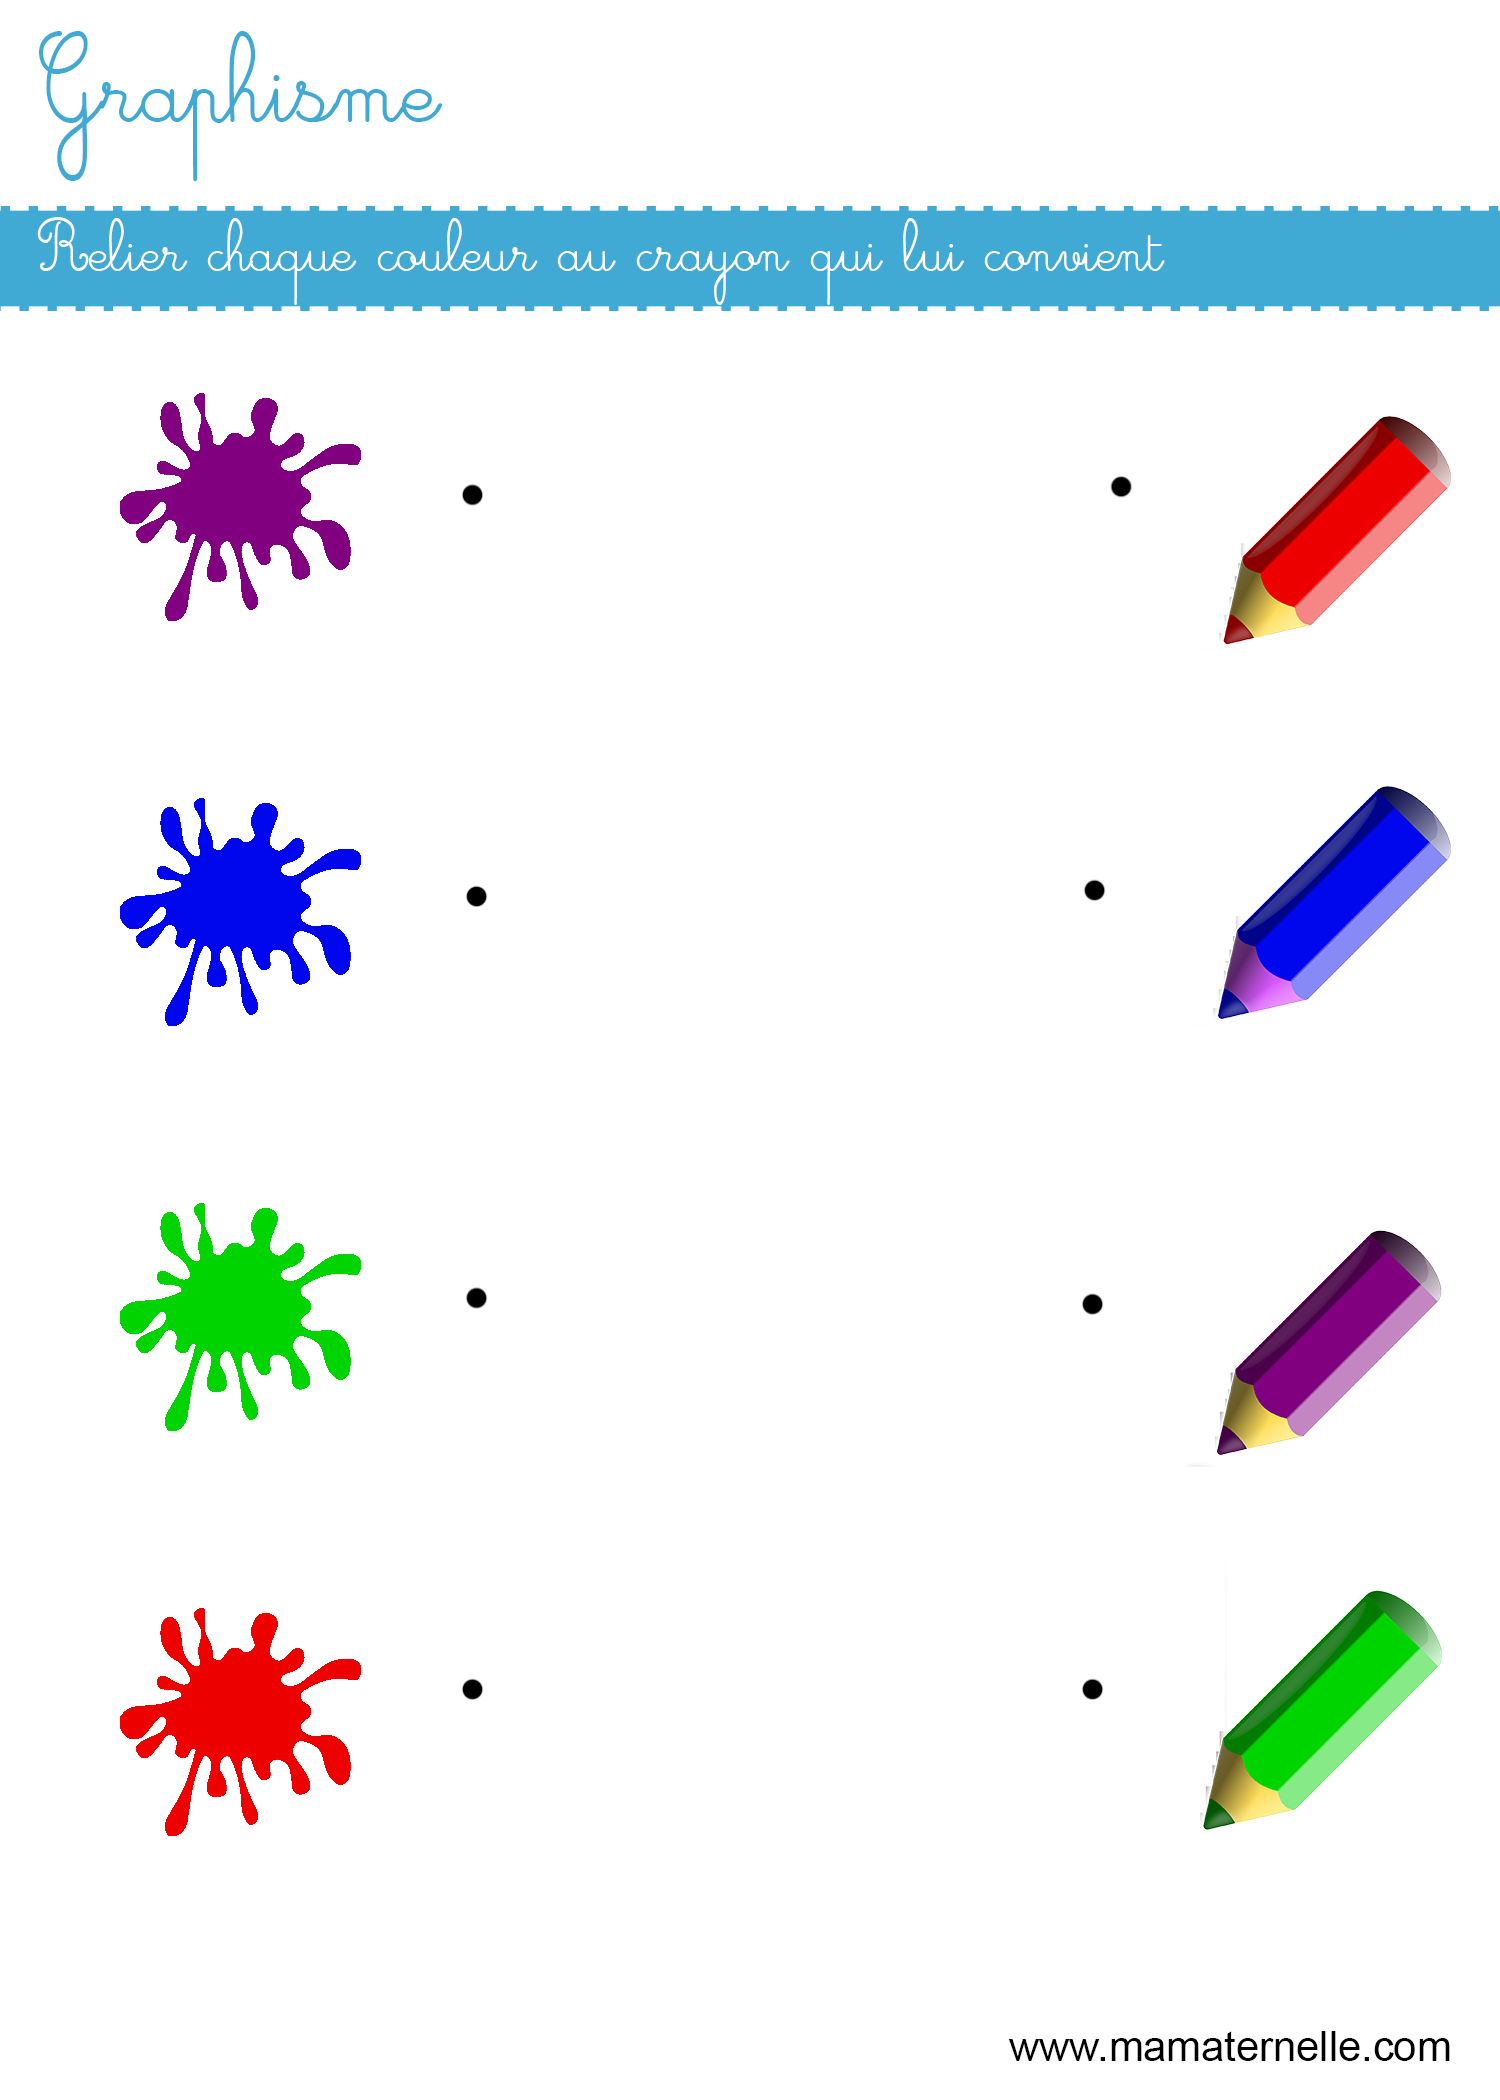 Apprendre les couleurs Volume 1: Les couleurs en images suivi du jeu 'QUI  SUIS-JE ? ' (+ réponses)